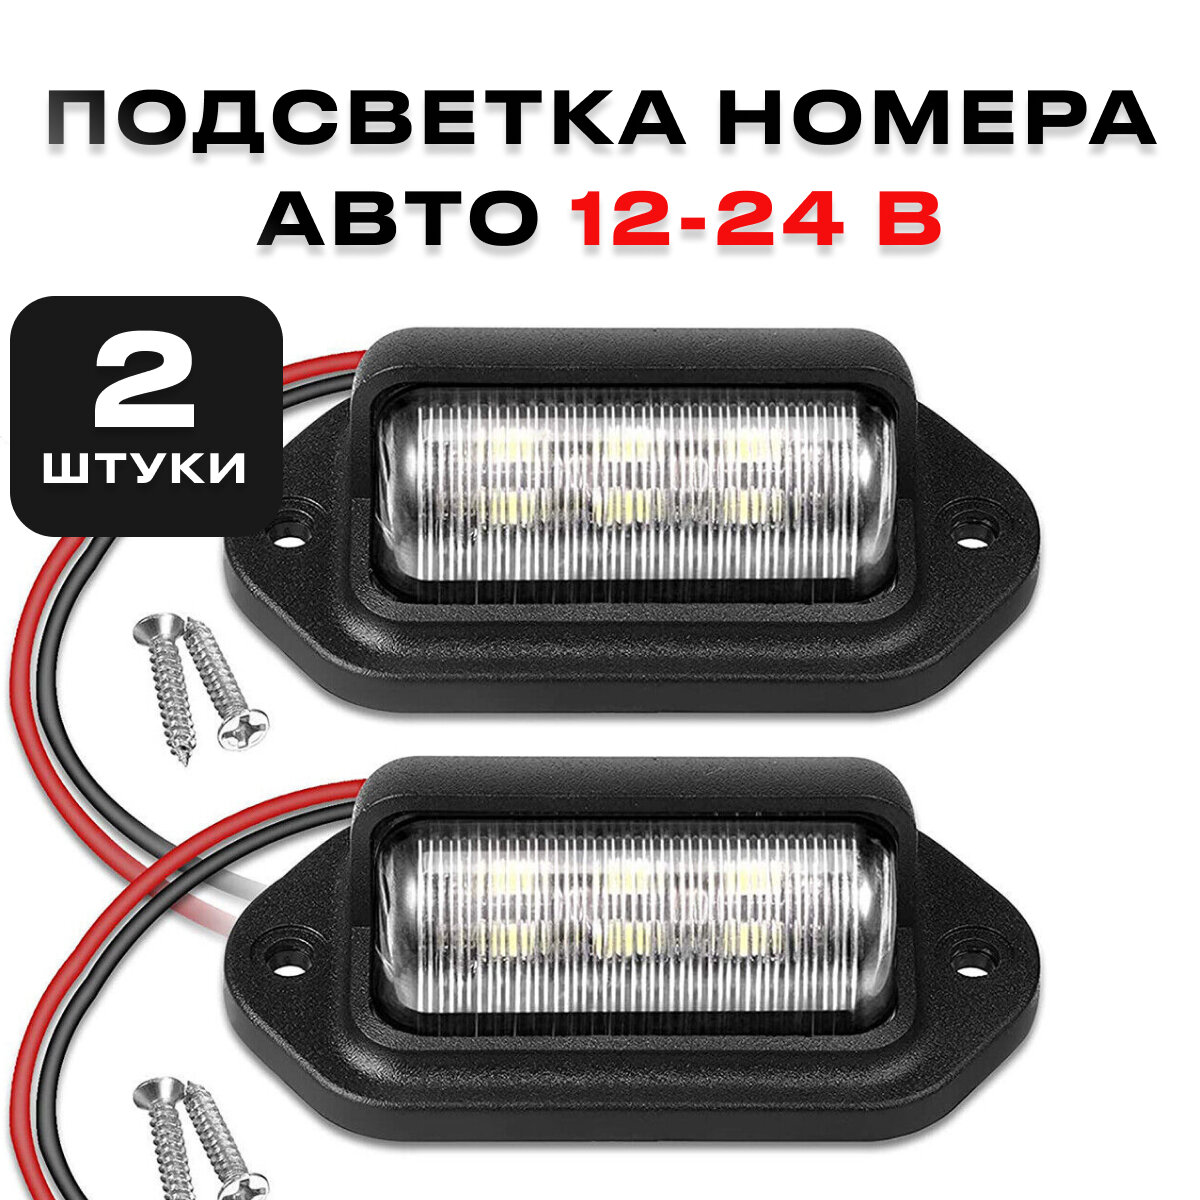 Подсветка номера для автомобиля, светодиодная, универсальная, 12-24 В, комплект из 2 штук